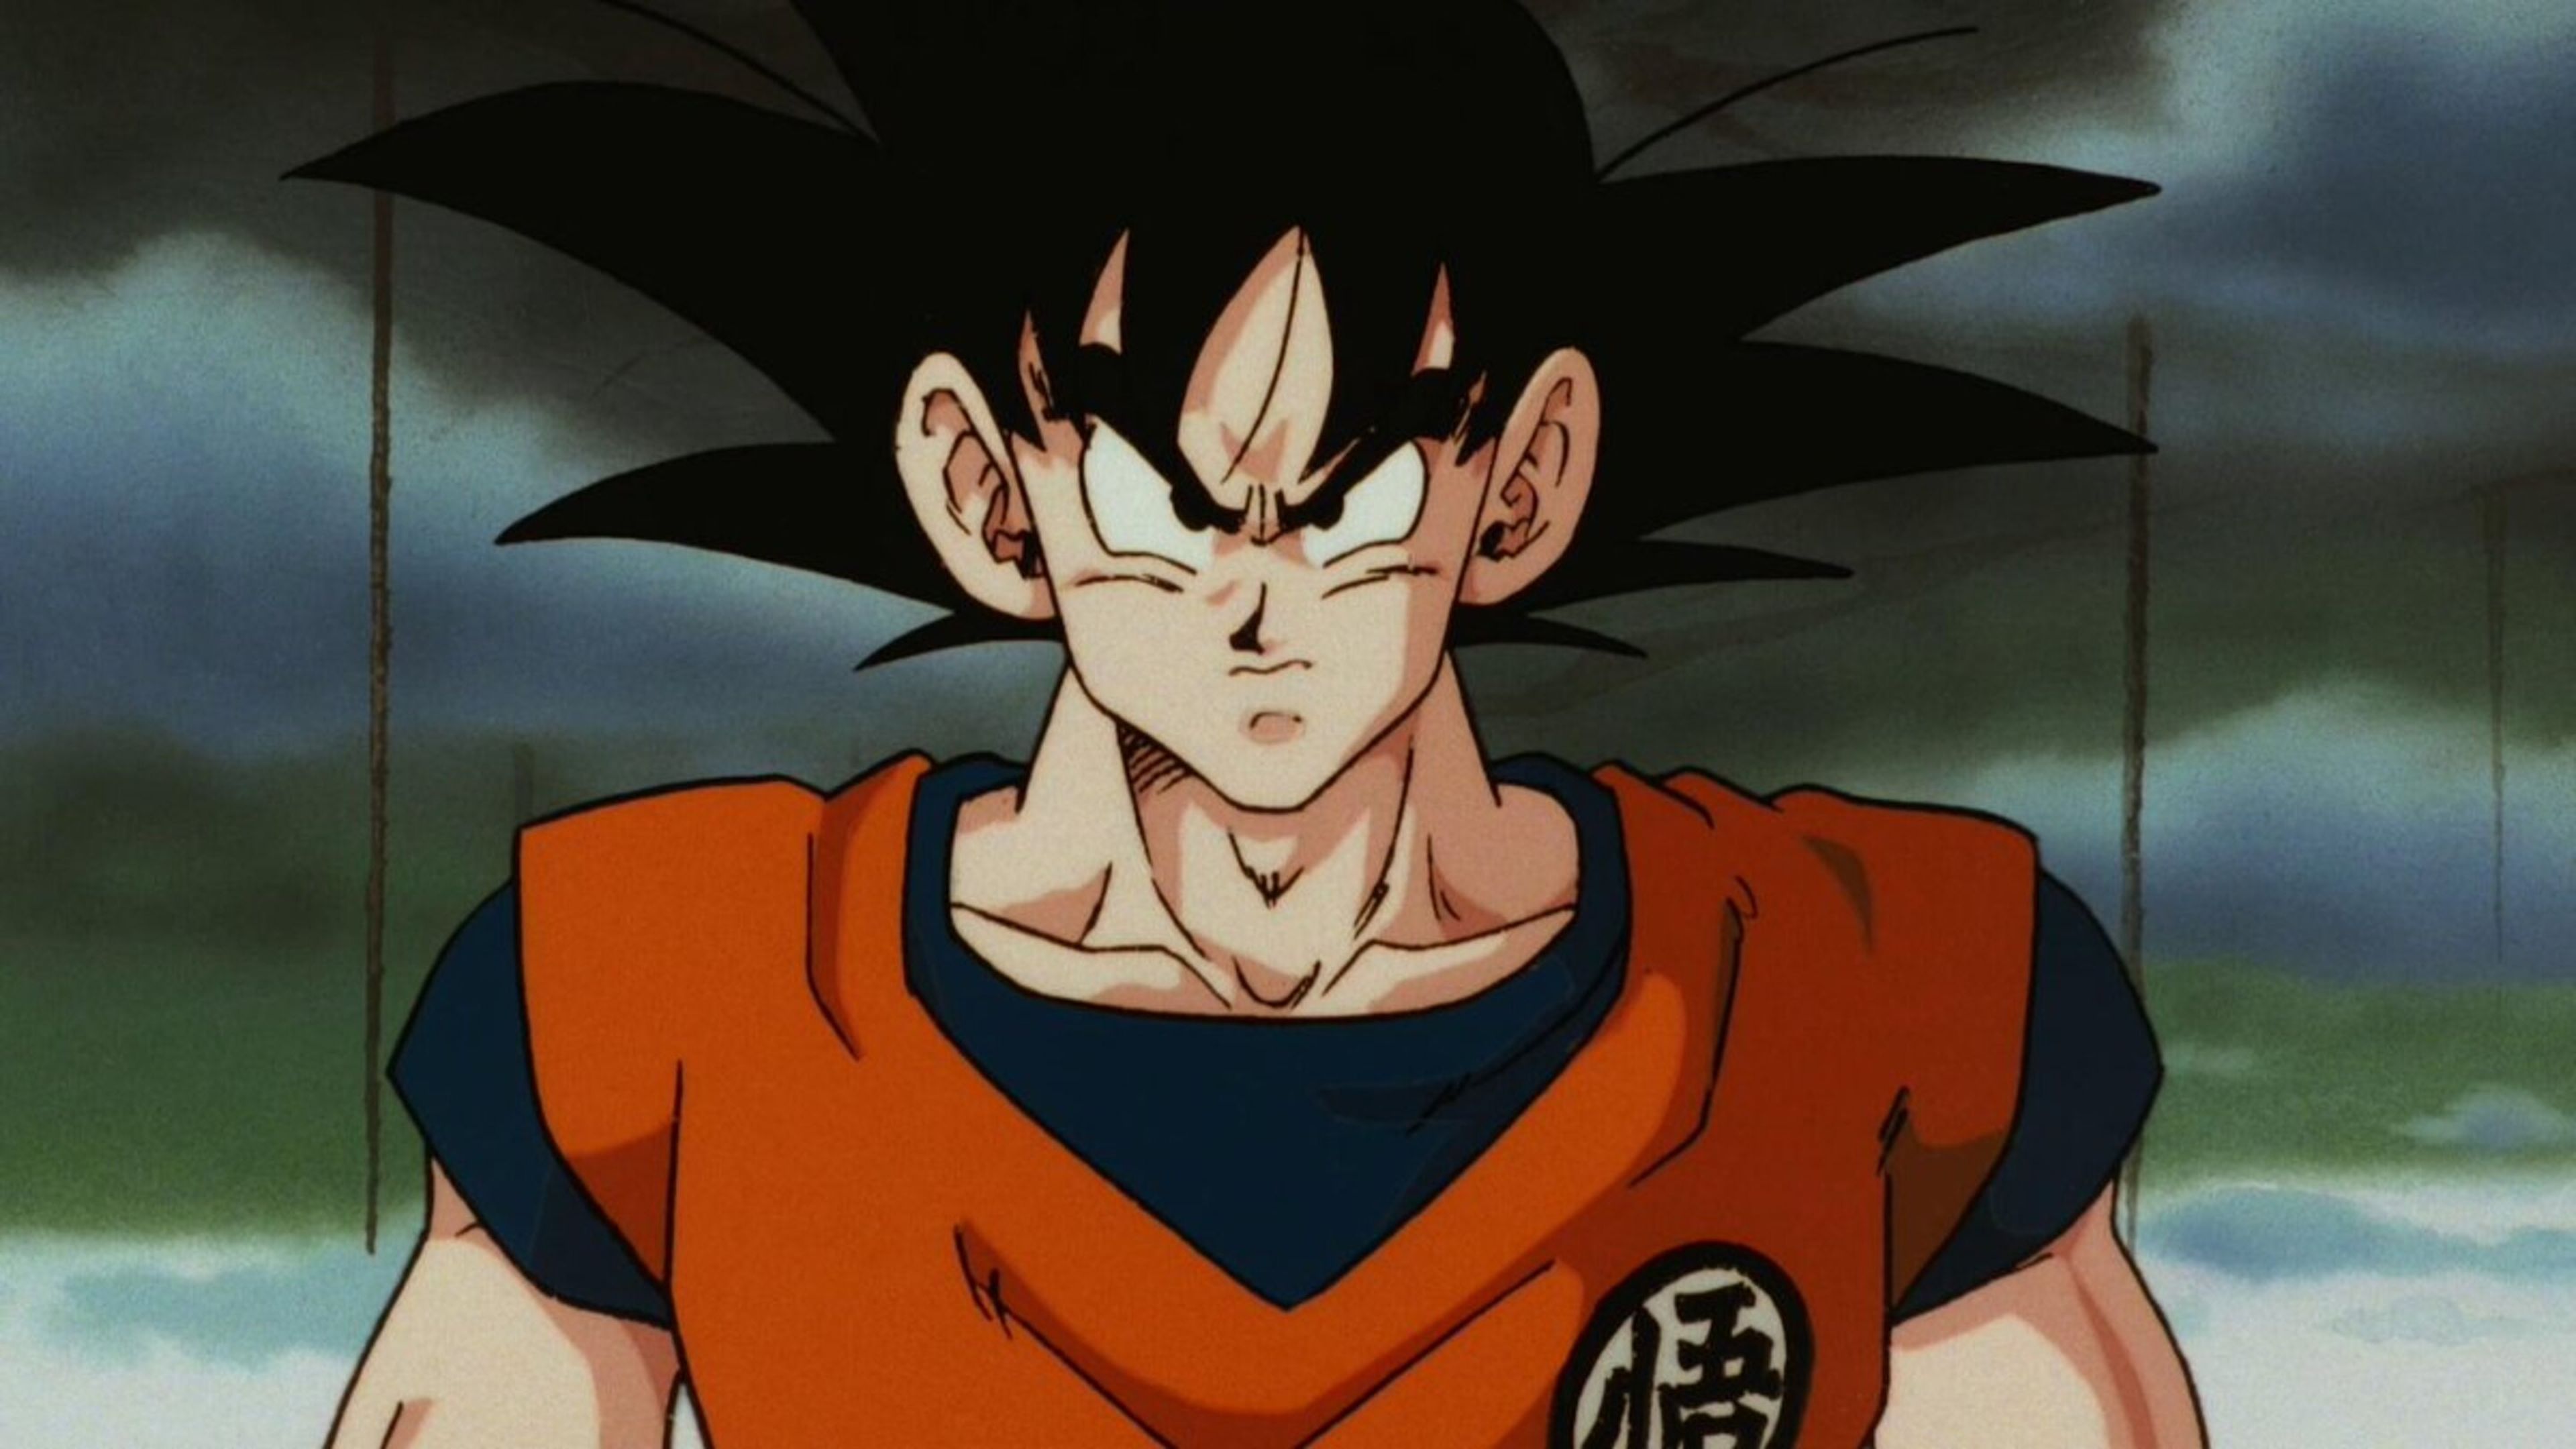 Dragon Ball Z - La nueva figura Son Goku FES de Banpresto basada en la saga de los saiyans